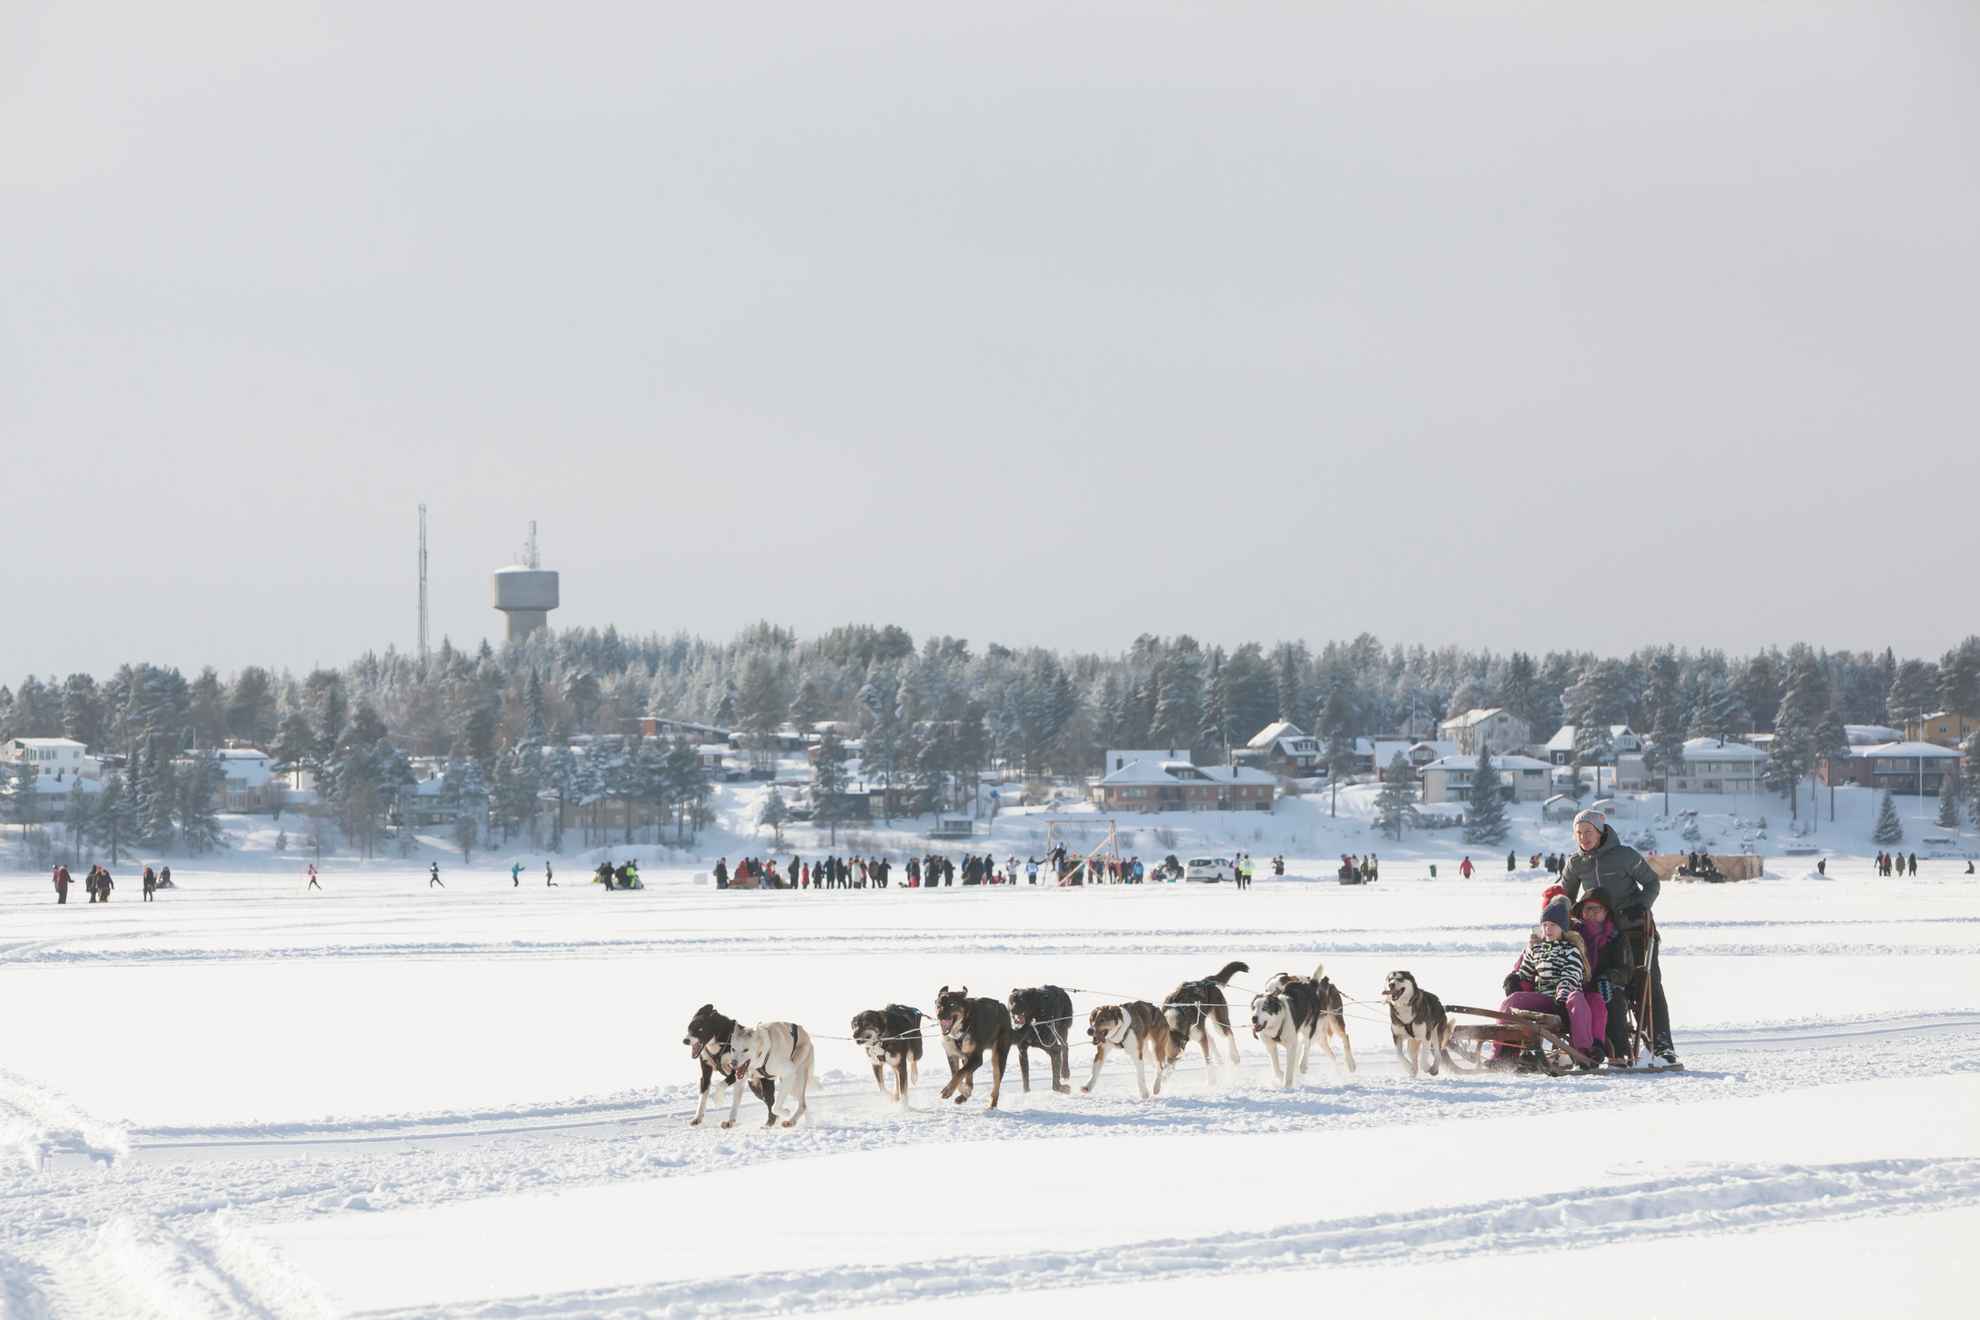 Hondensleetochten over ijs en sneeuw met huizen en mensen op de achtergrond.